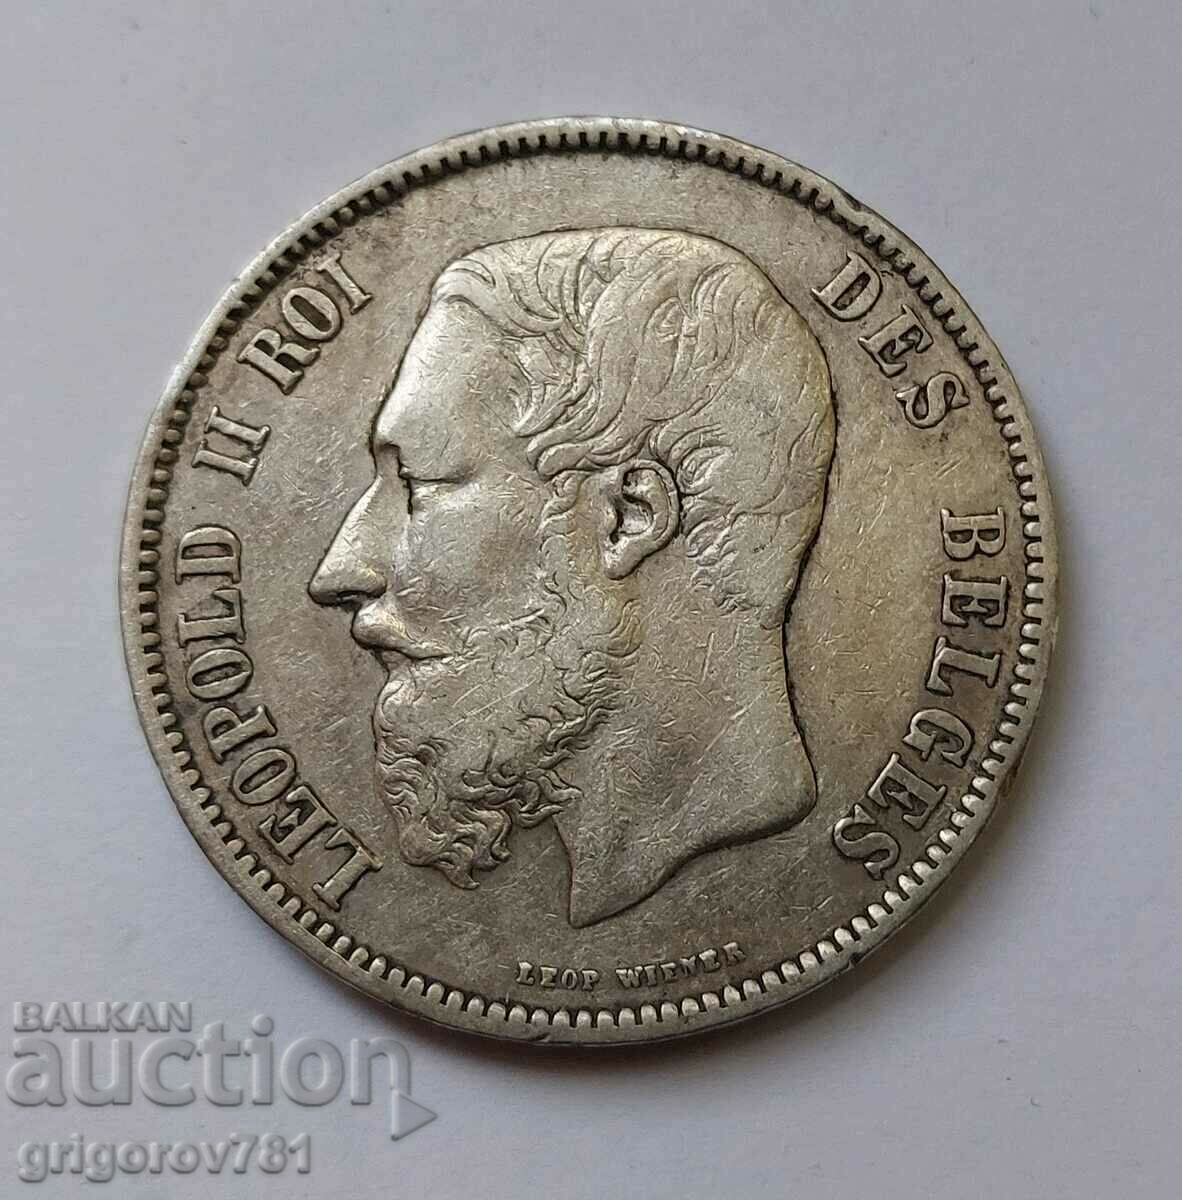 5 Francs Silver Belgium 1874 - Silver Coin #106